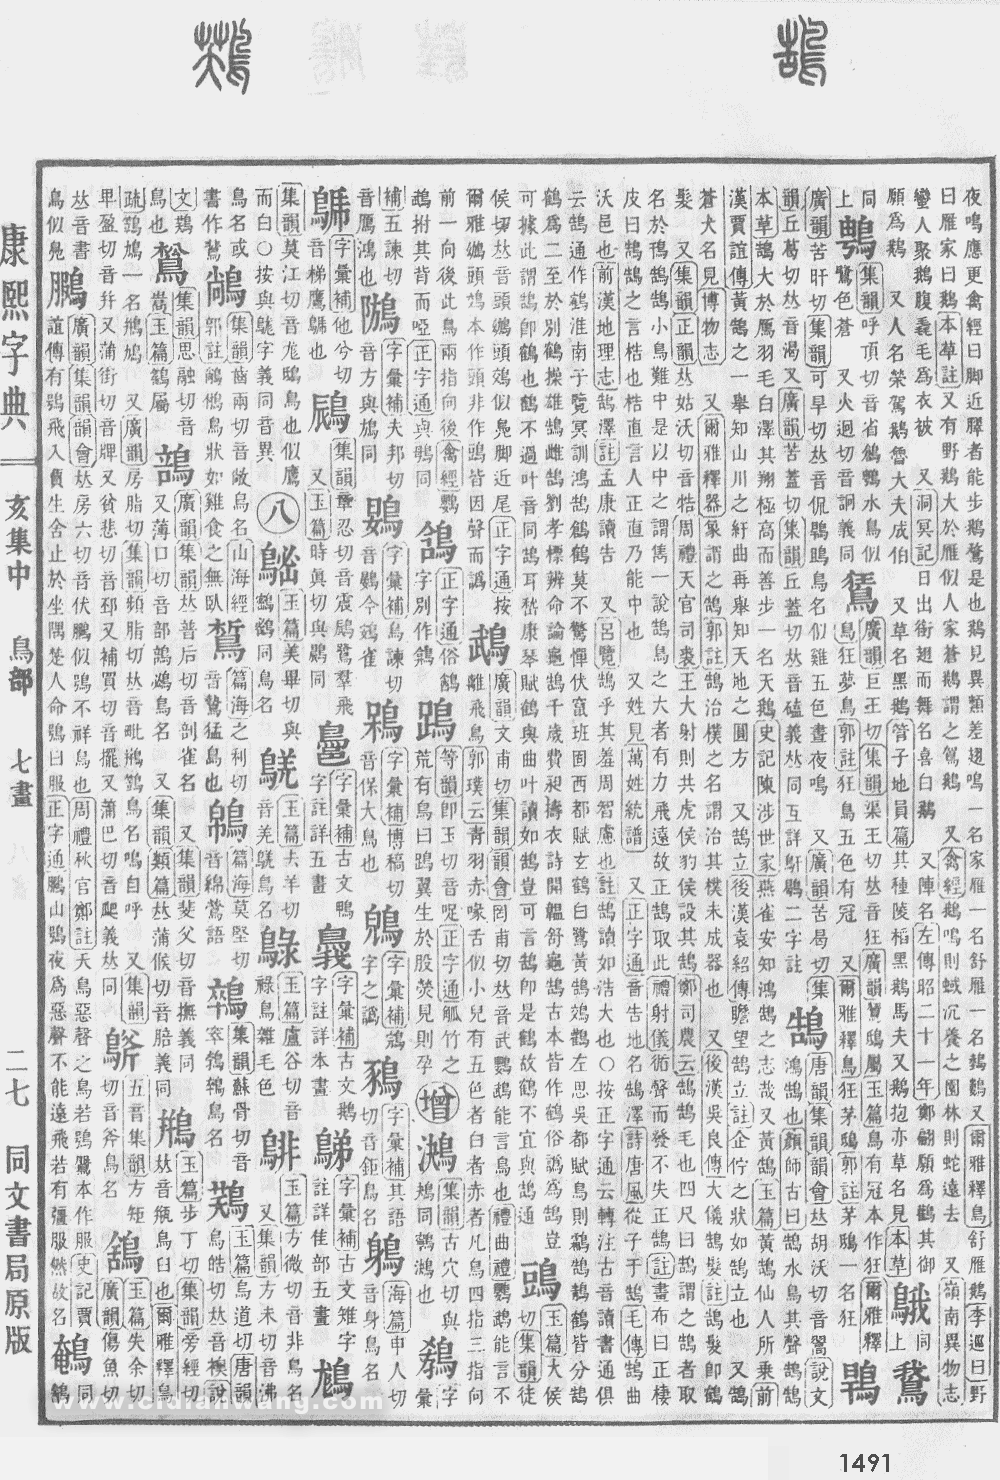 康熙字典掃描版第1491頁